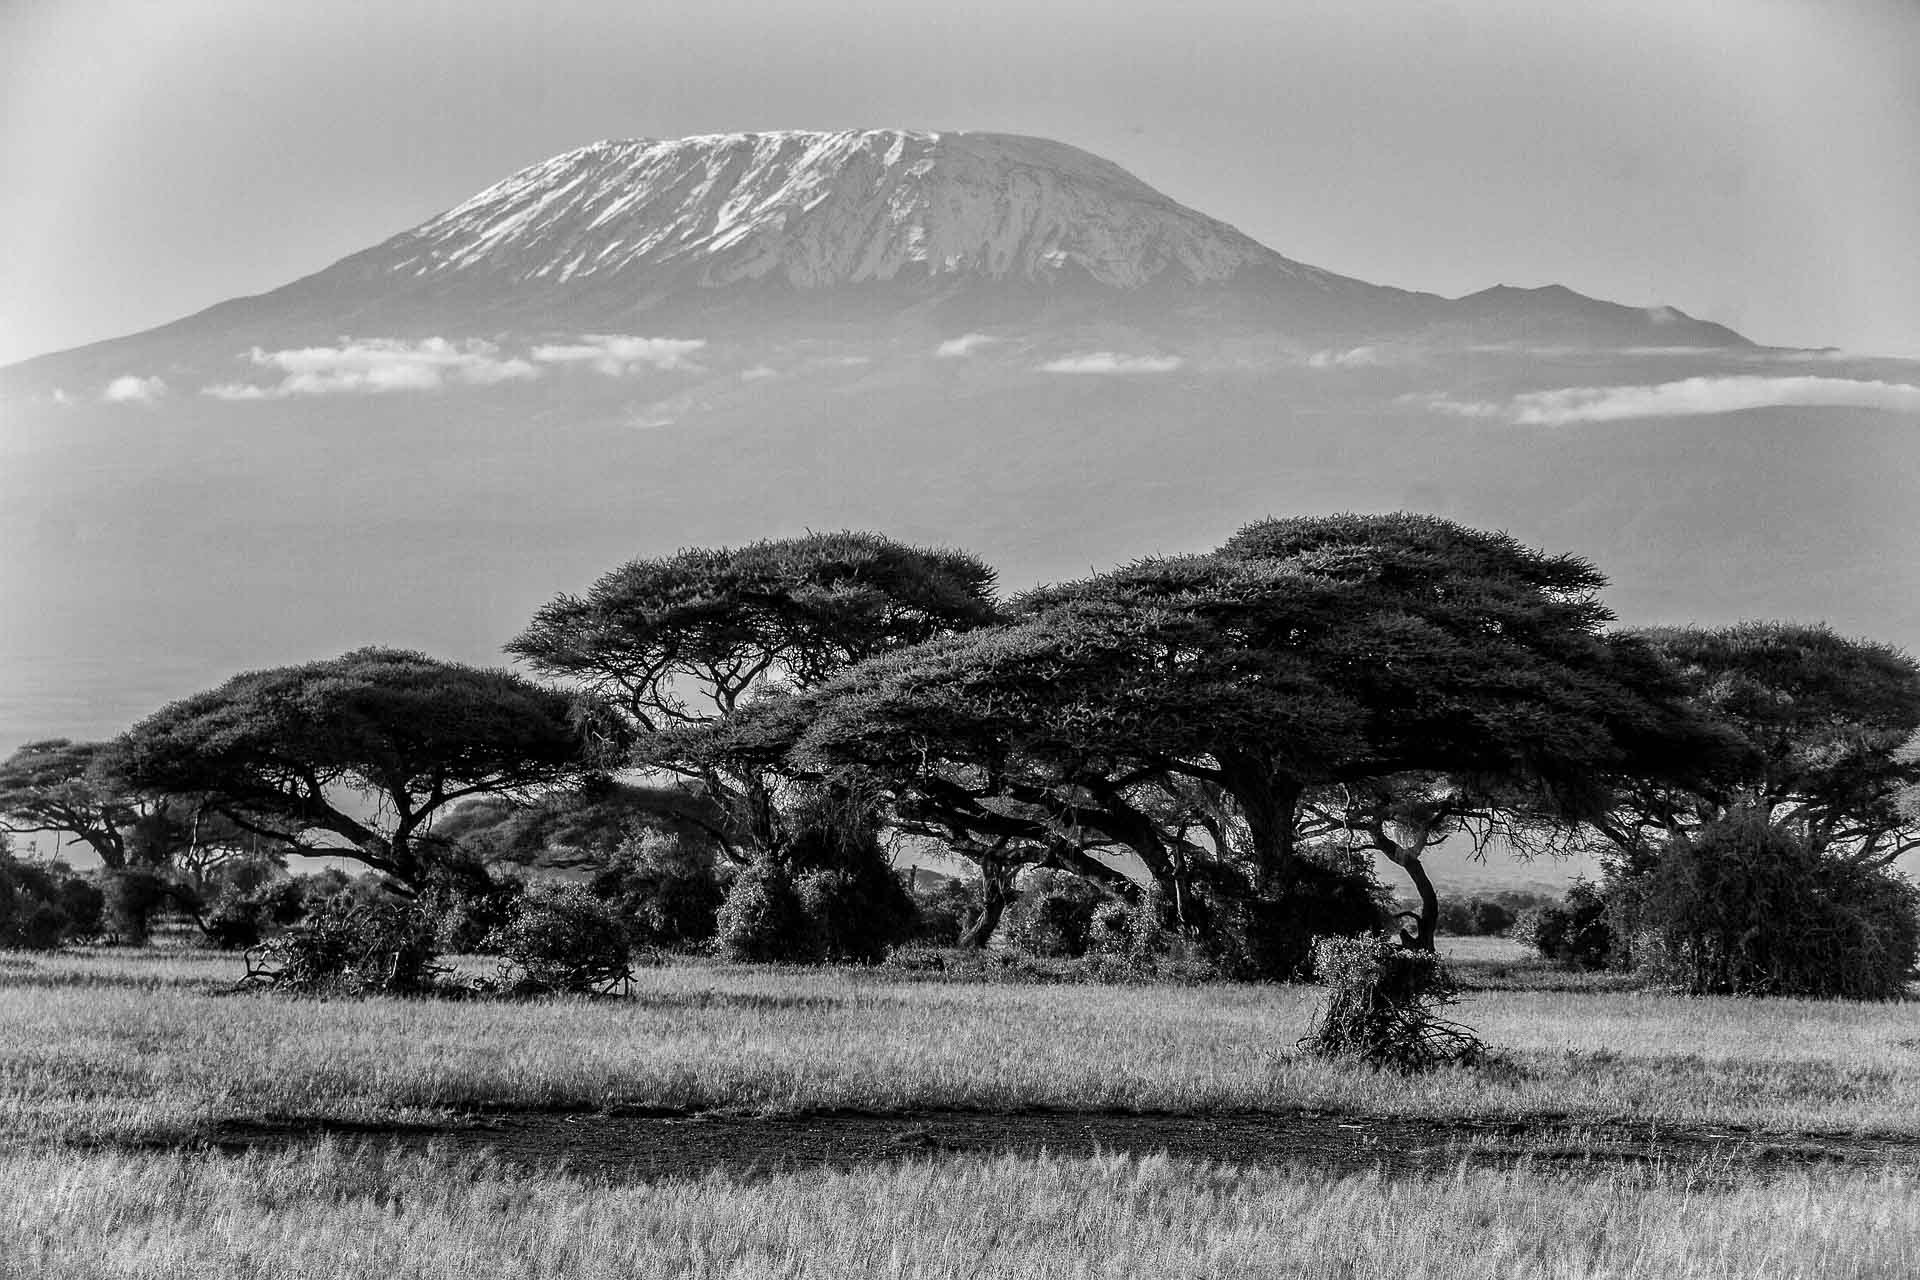 A black and white photo of the Kilimanjaro mountain in Tanzania